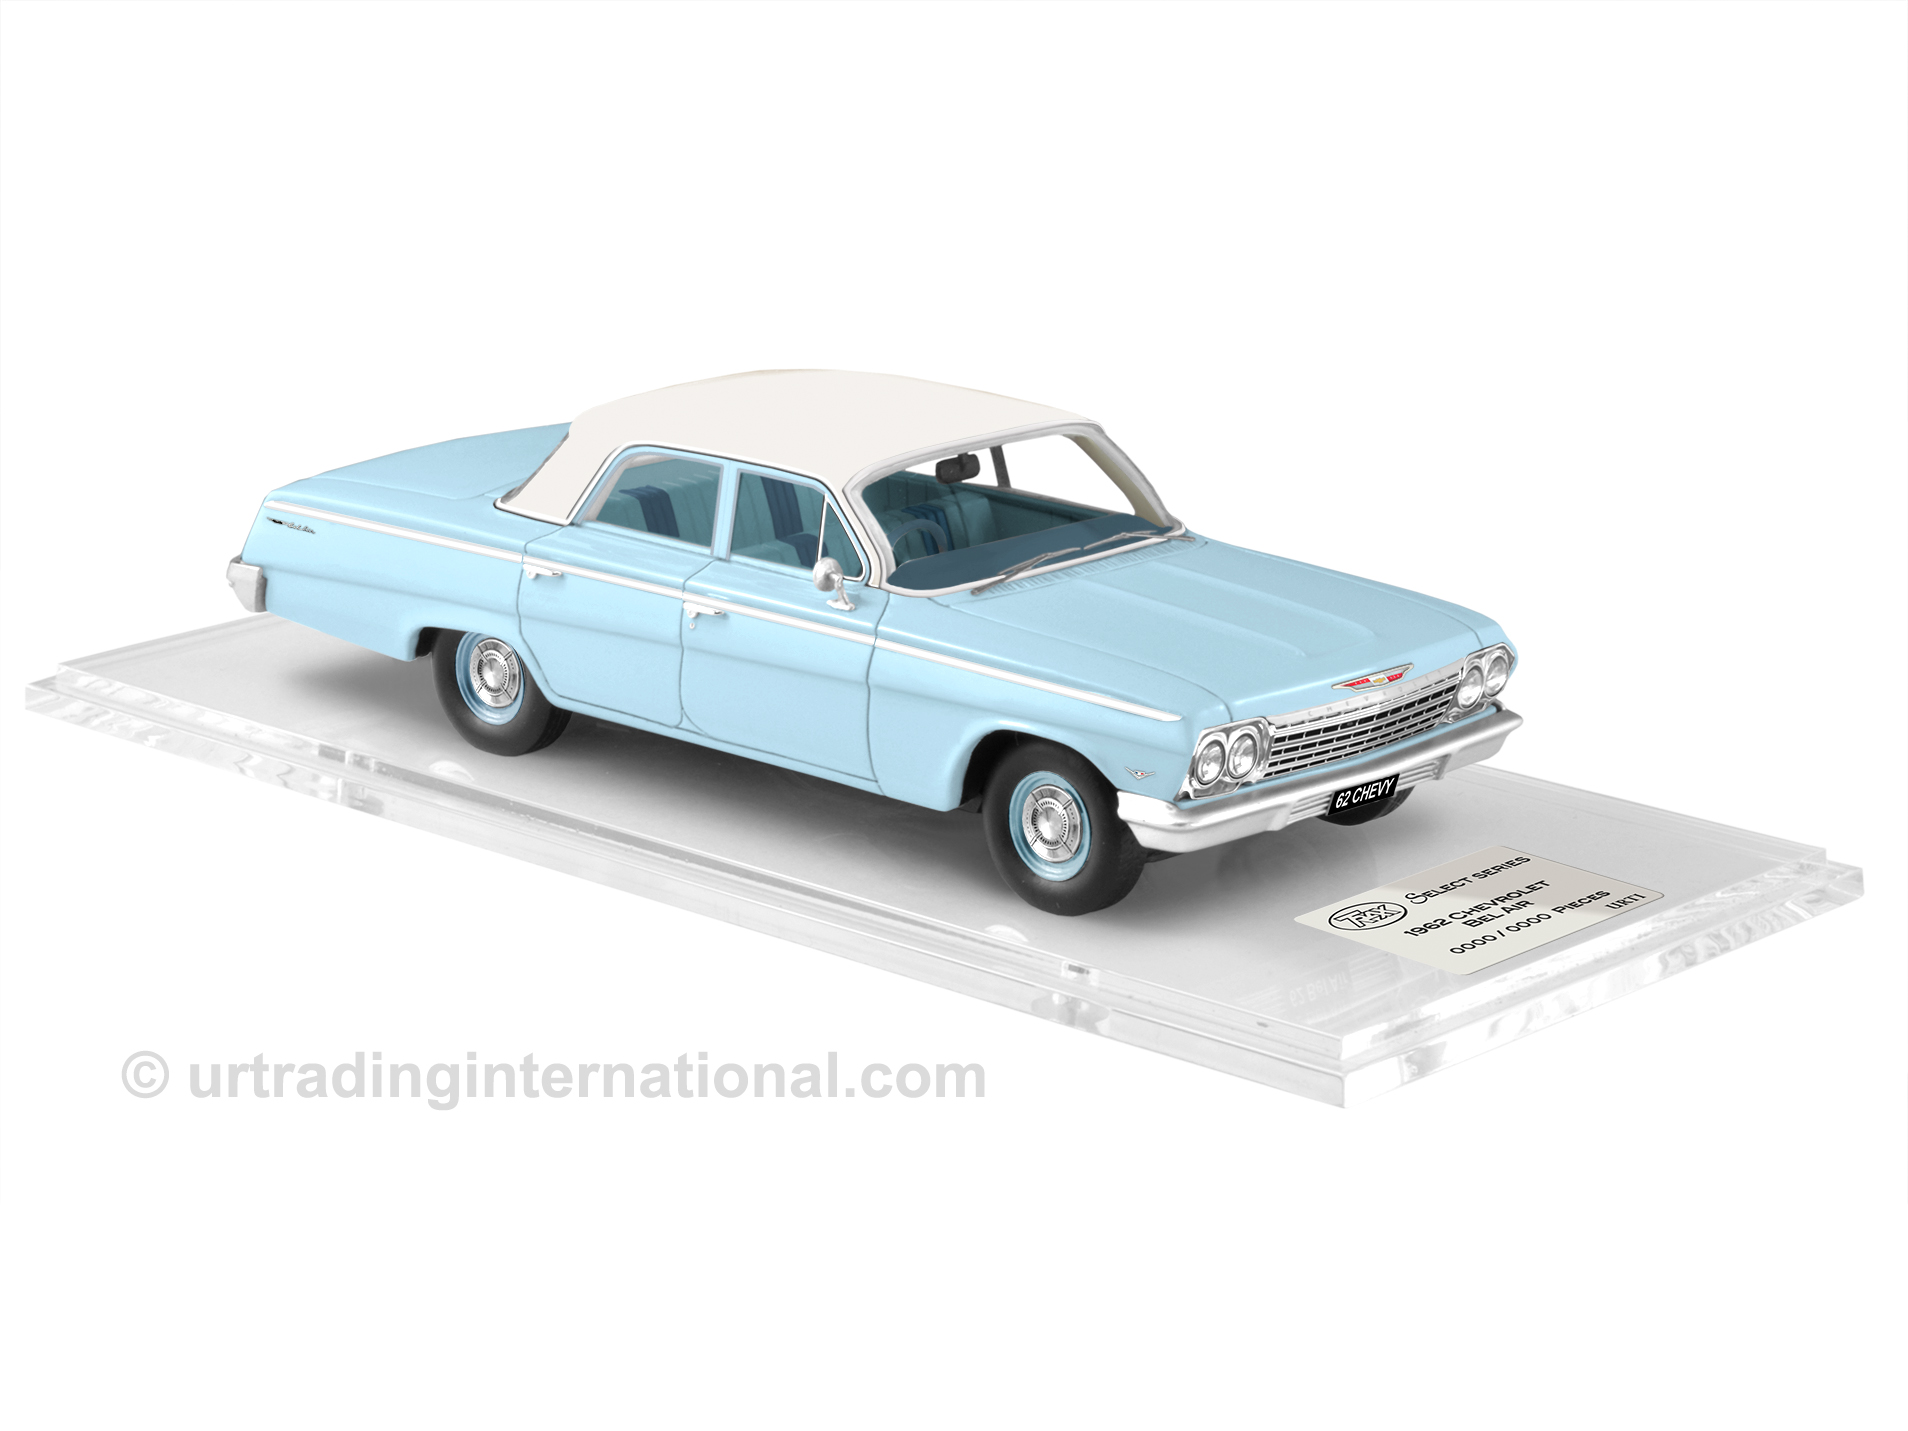 1962 Chevrolet Bel Air – Wedgewood Blue